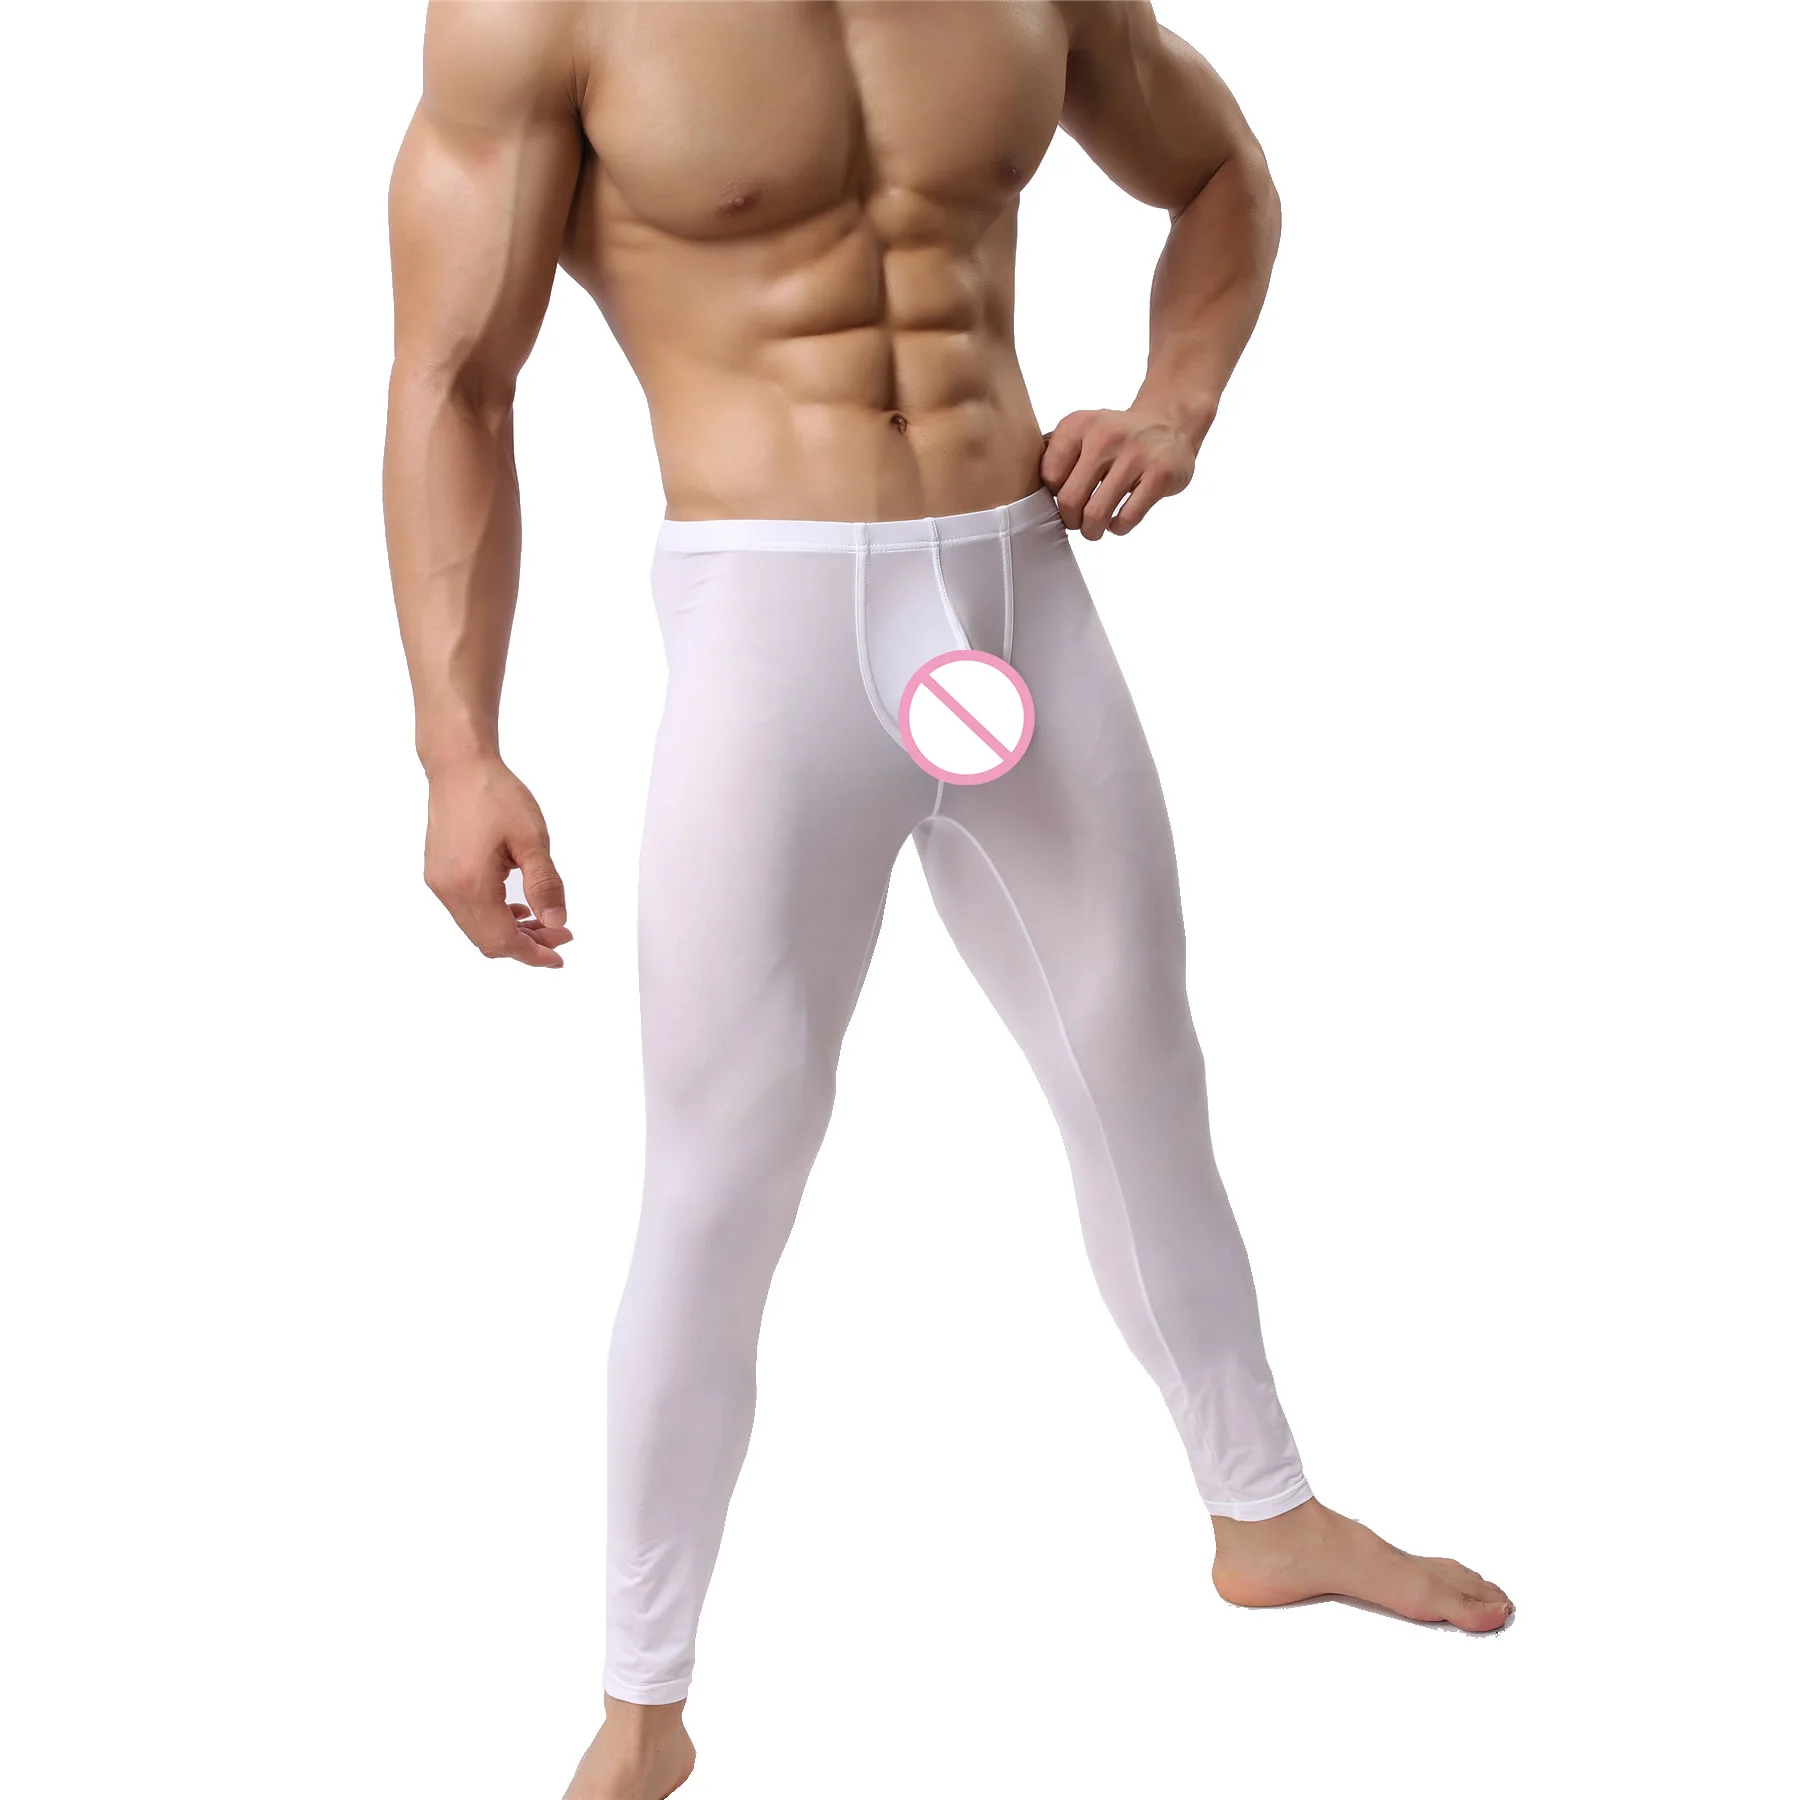 Мужские сексуальные кальсоны, мужские кальсоны, леггинсы для сна, низ, эластичность, полупрозрачные пижамы, обтягивающие термо брюки для отдыха - Цвет: White